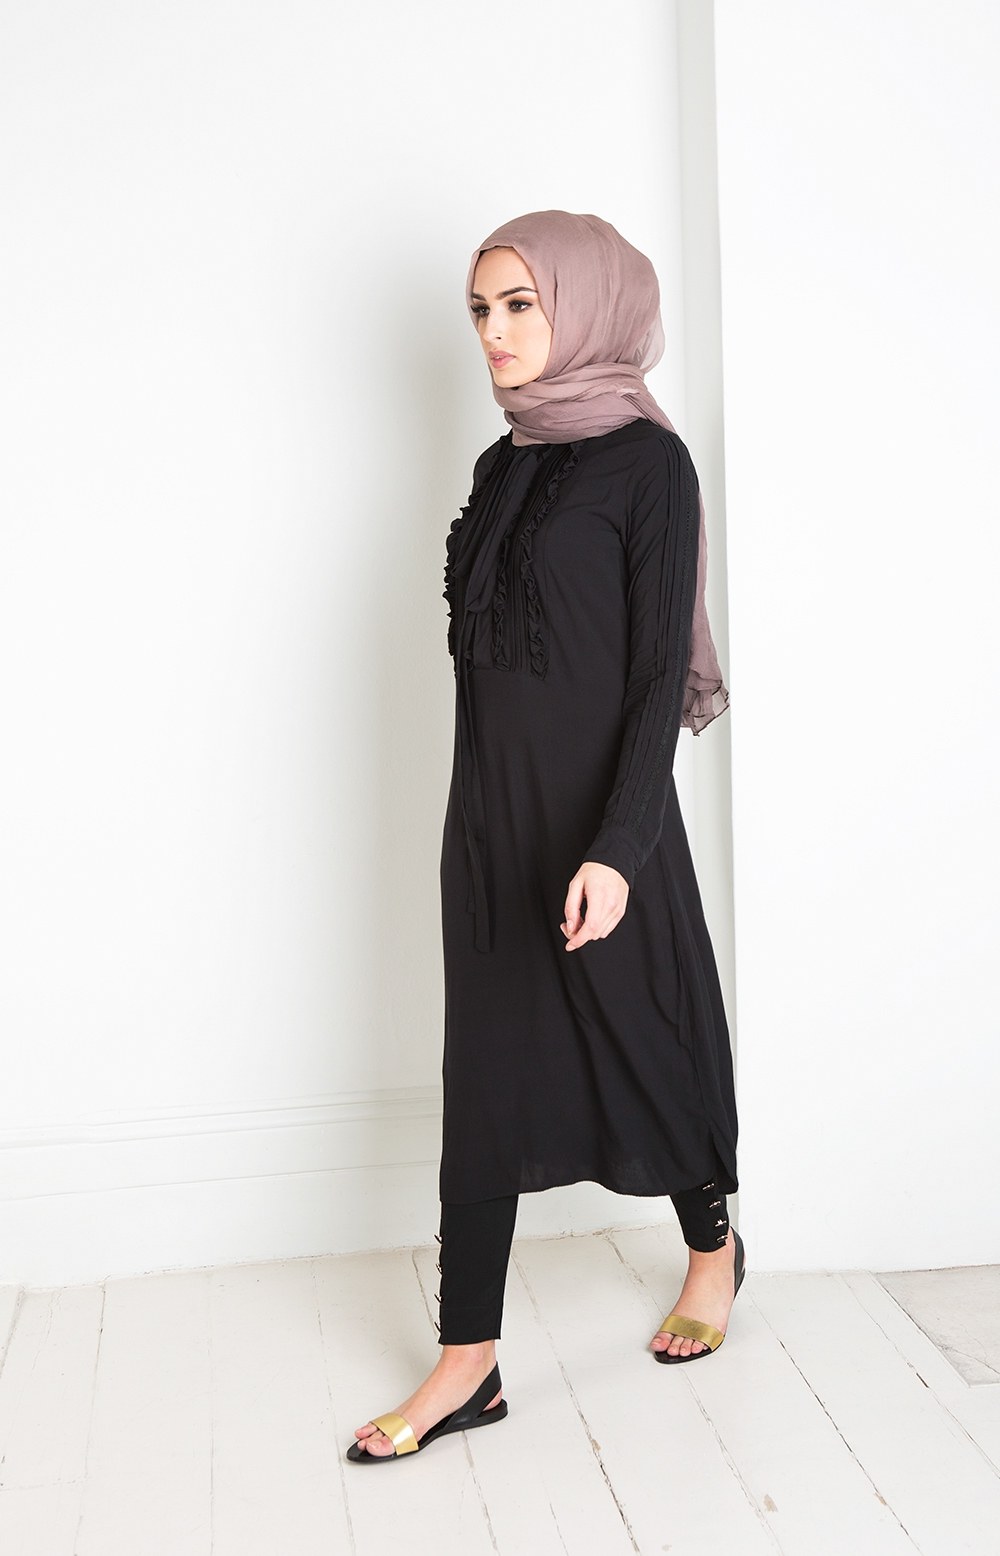 Bentuk Model Baju Lebaran Wanita Mndw 25 Trend Model Baju Muslim Lebaran 2018 Simple &amp; Modis